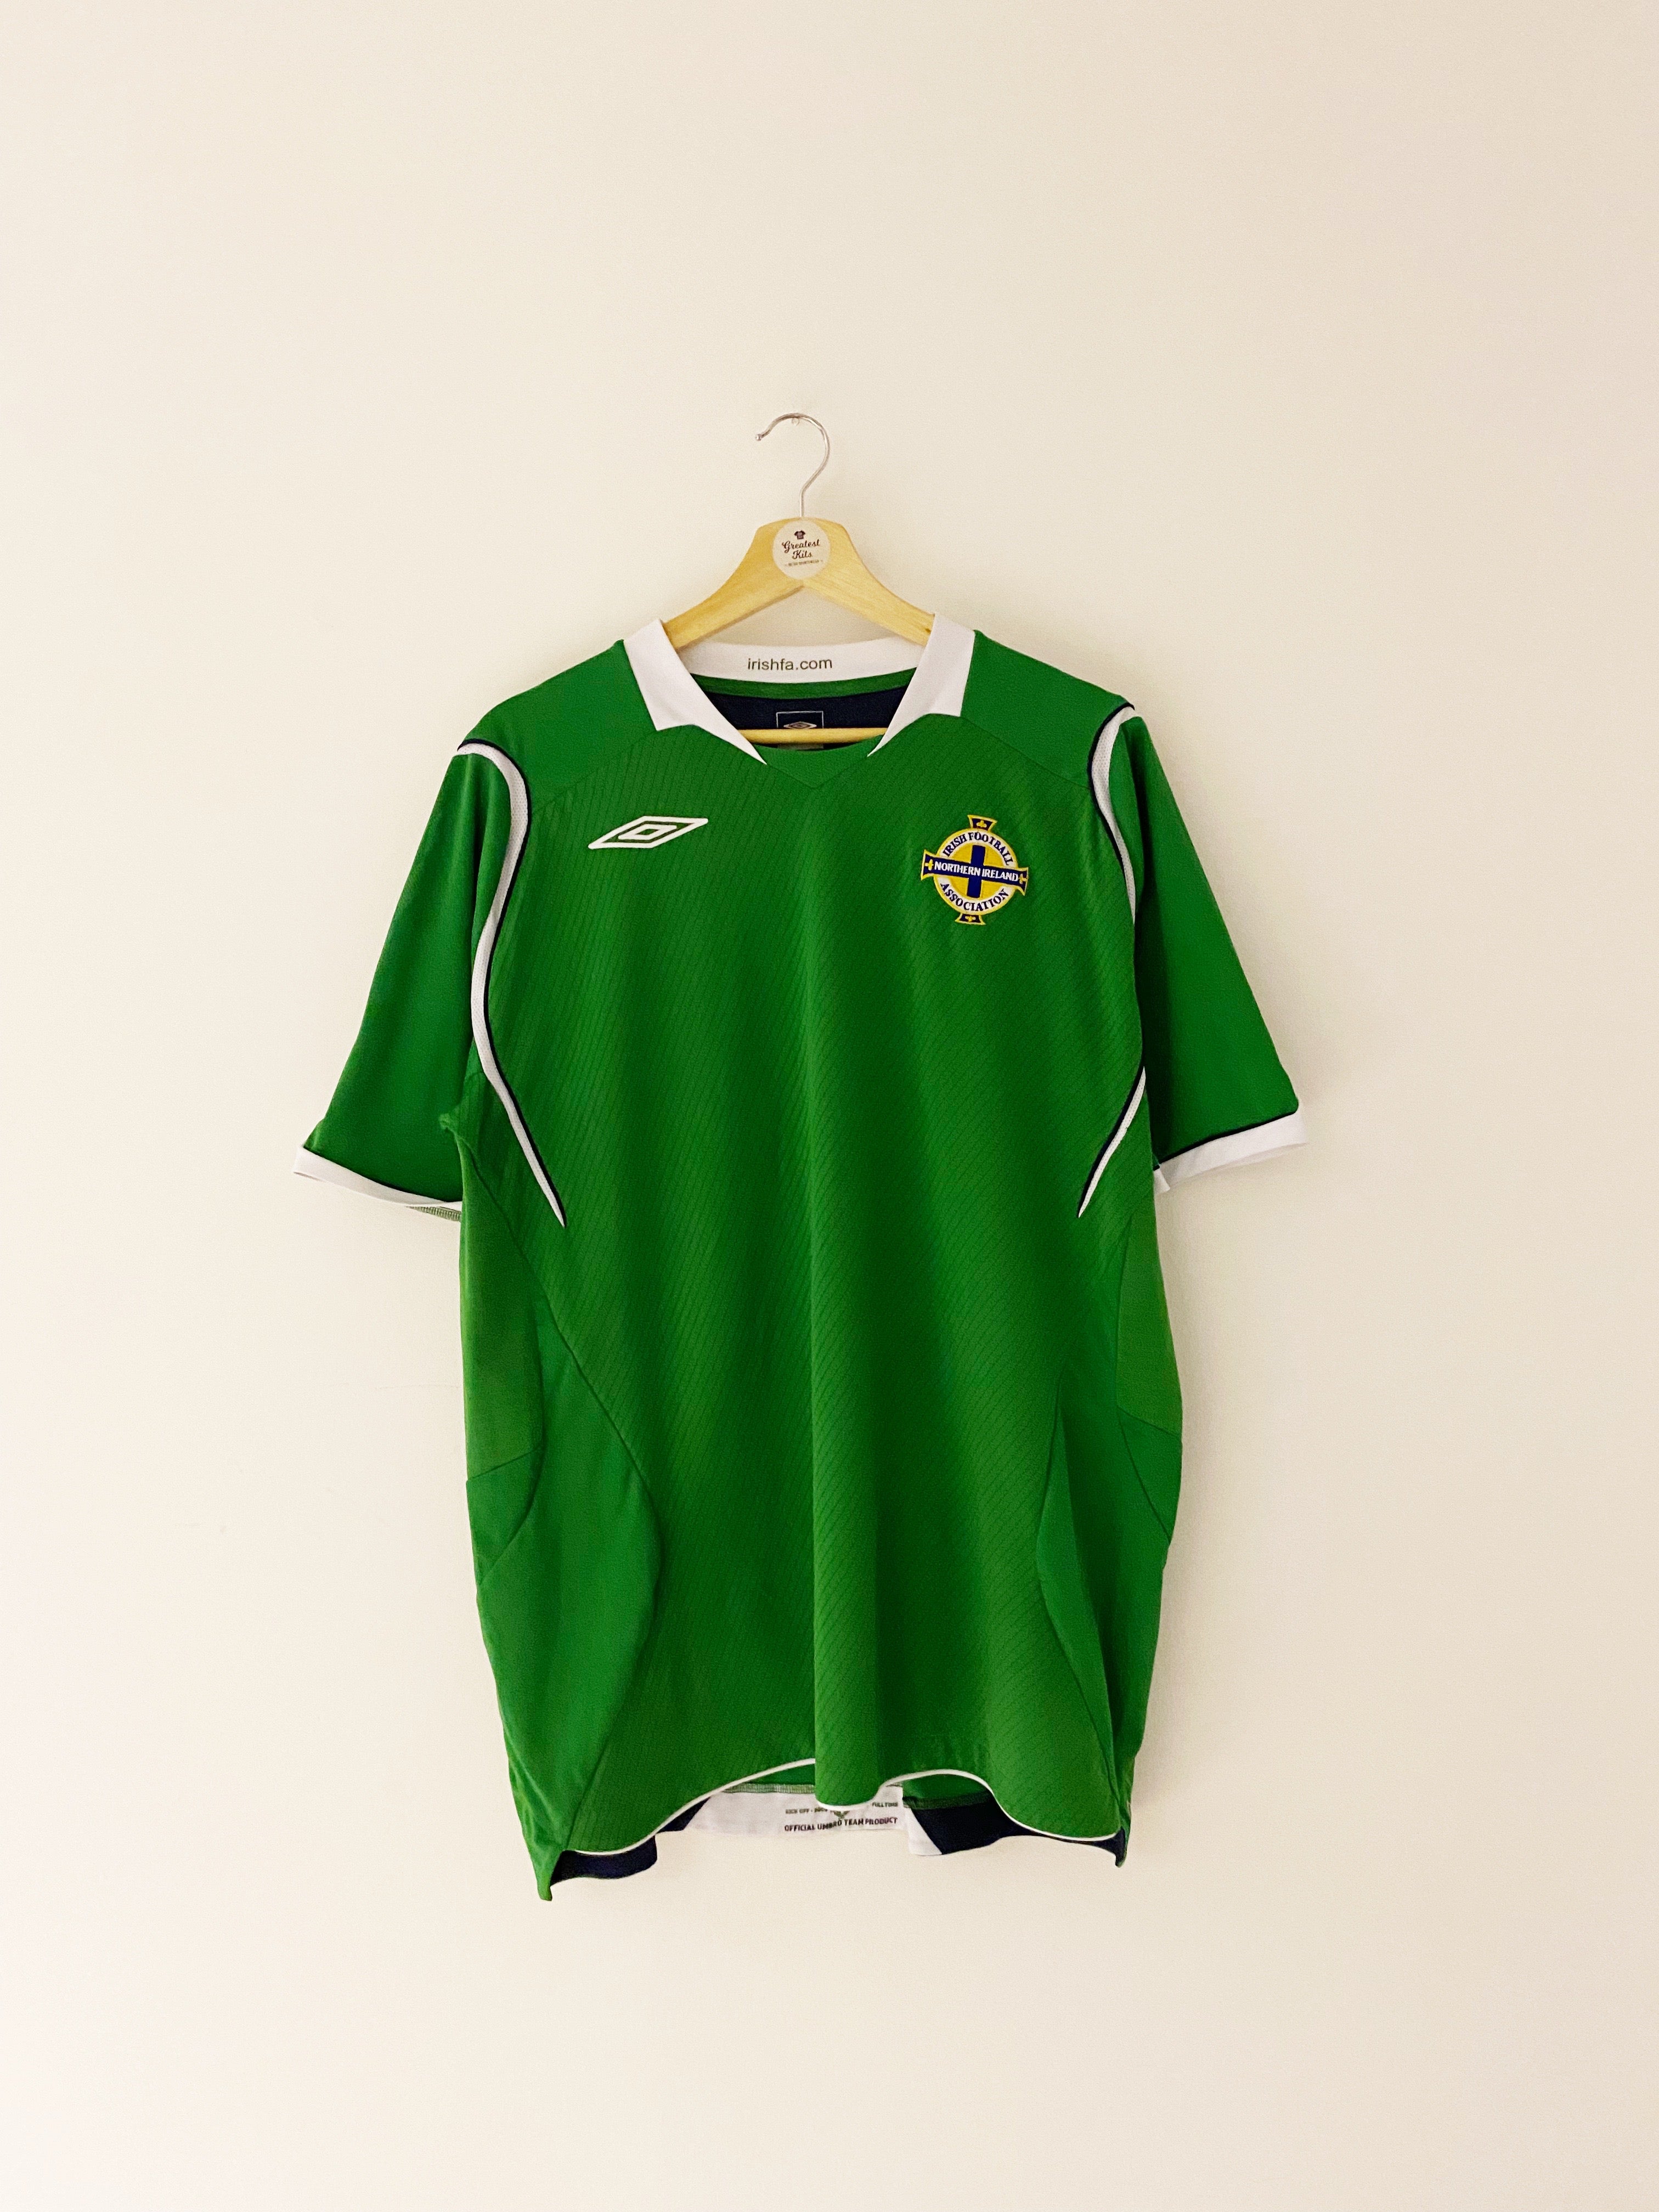 Camiseta local de Irlanda del Norte 2008/10 (XL) 9/10